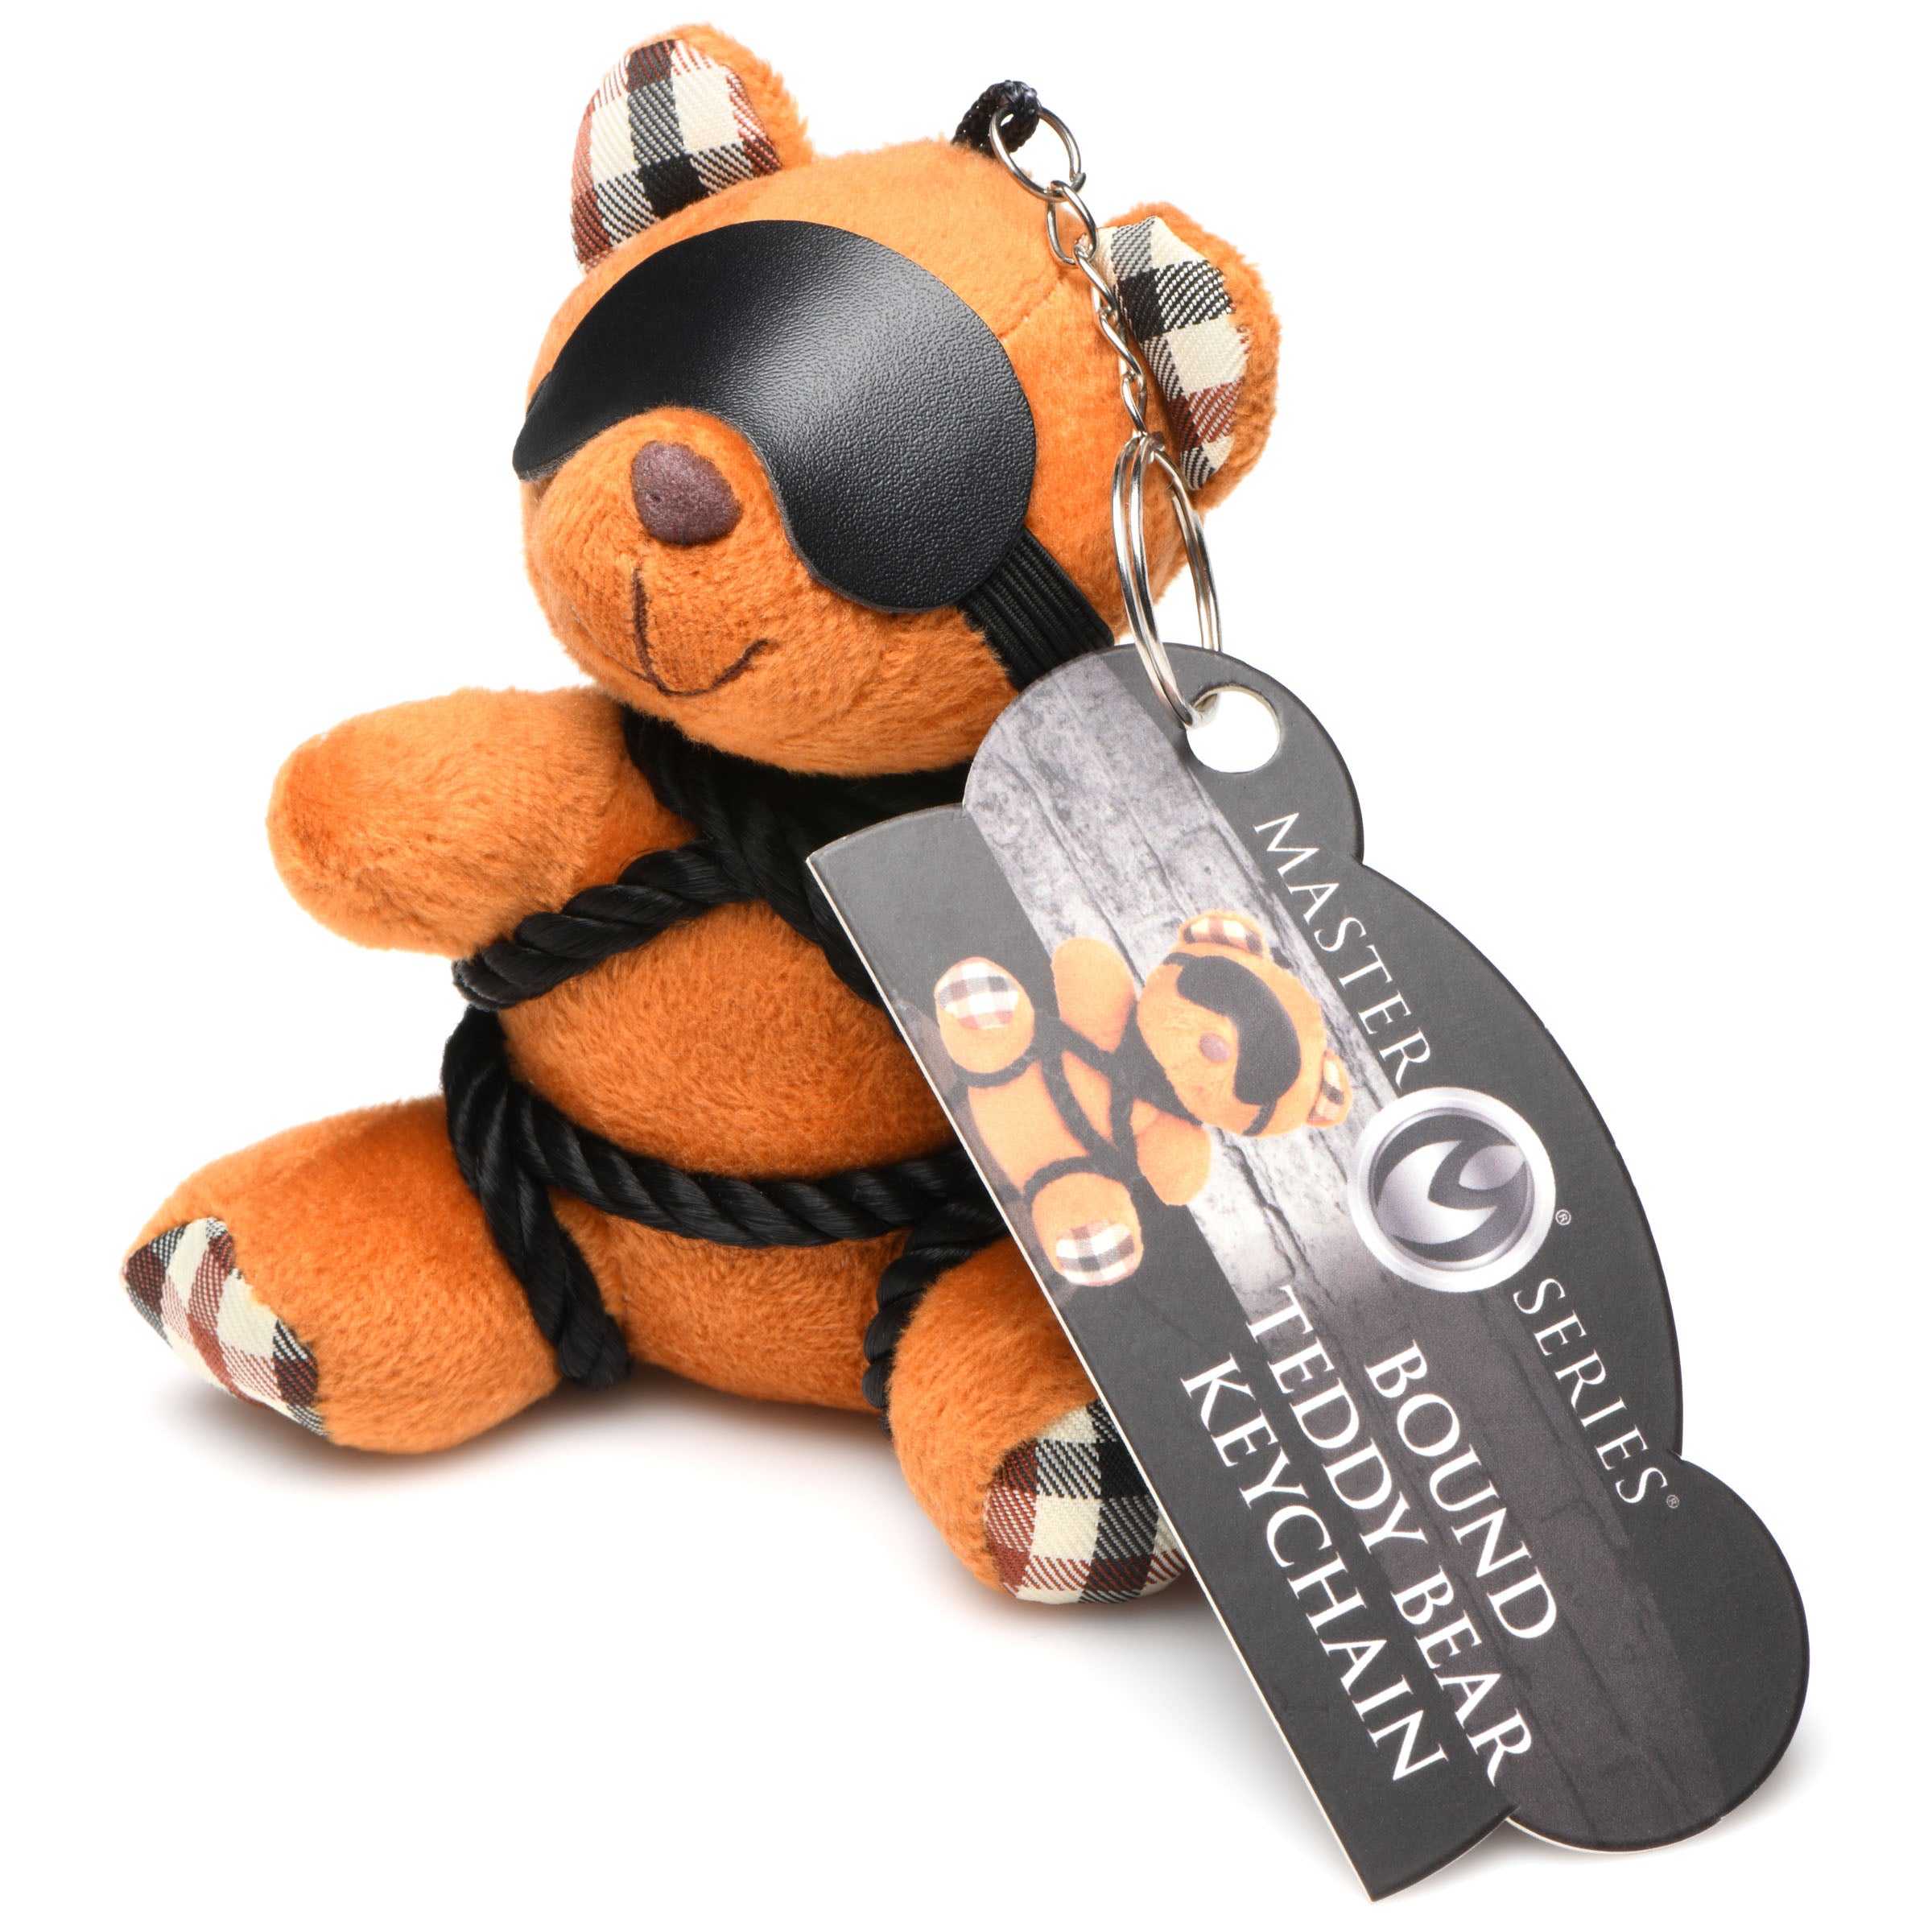 ShiBeari Teddy Bear Keychain